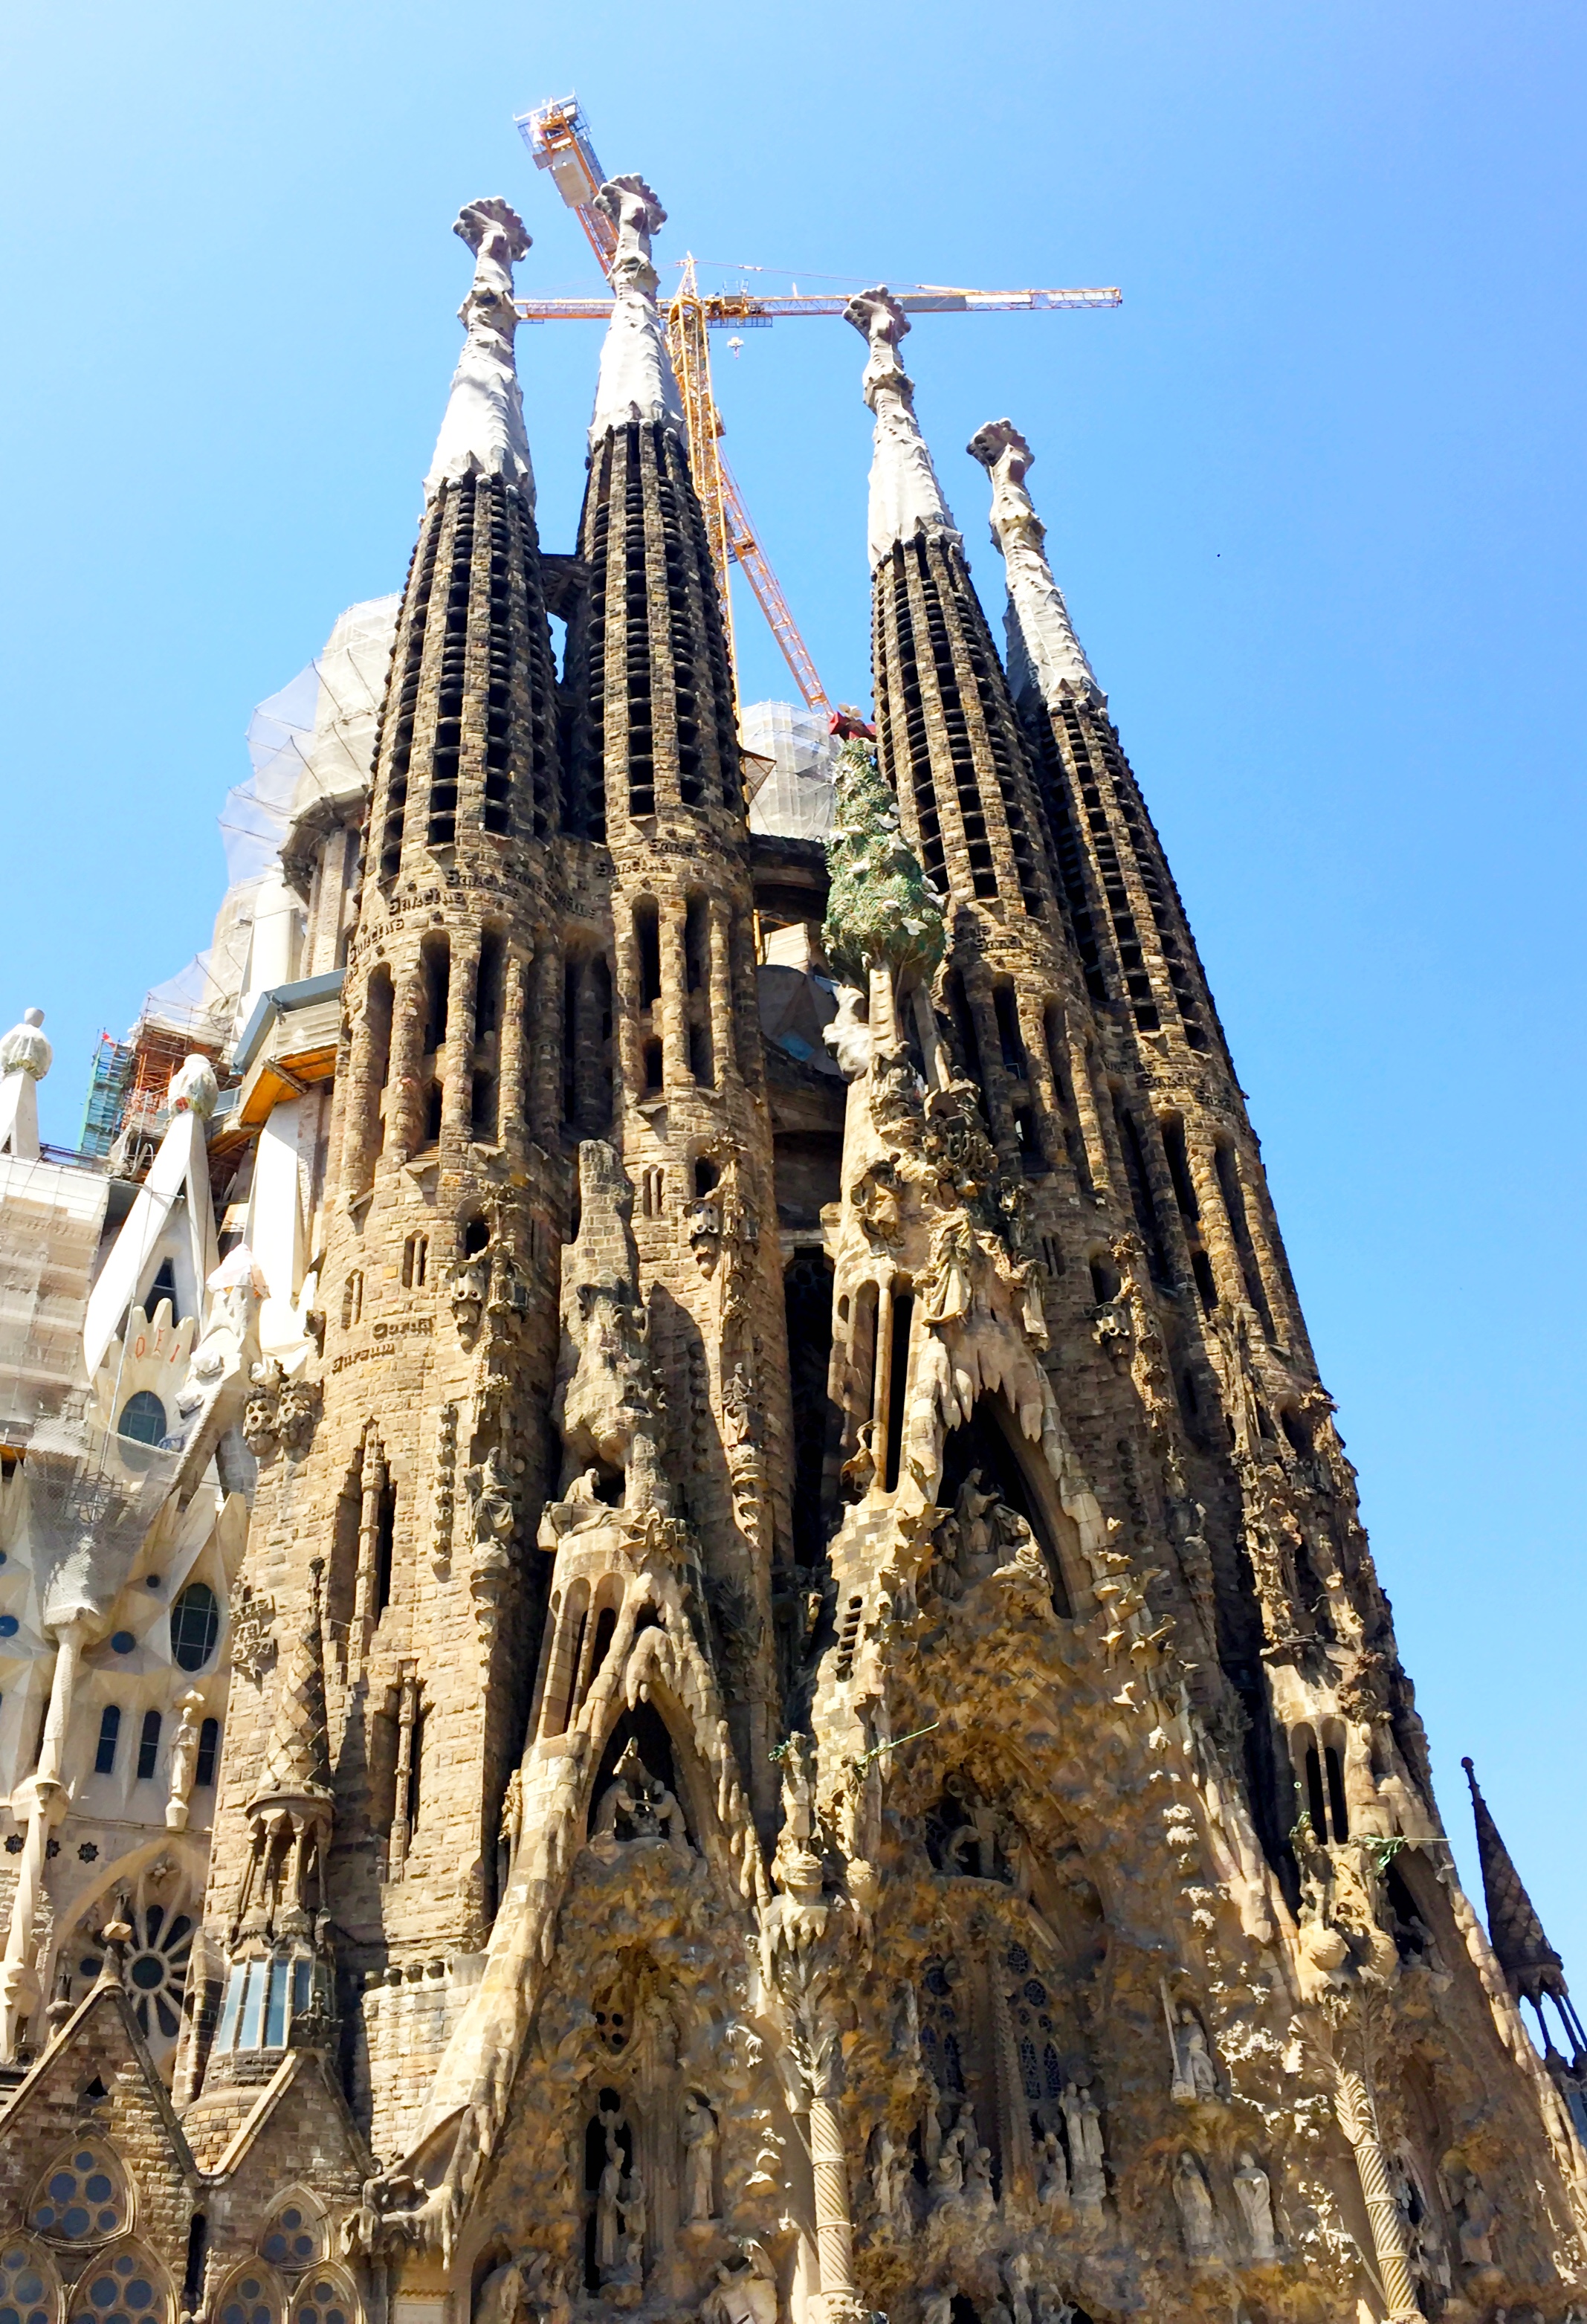 Top Gaudï sites in Barcelona: La Sagrada Familia